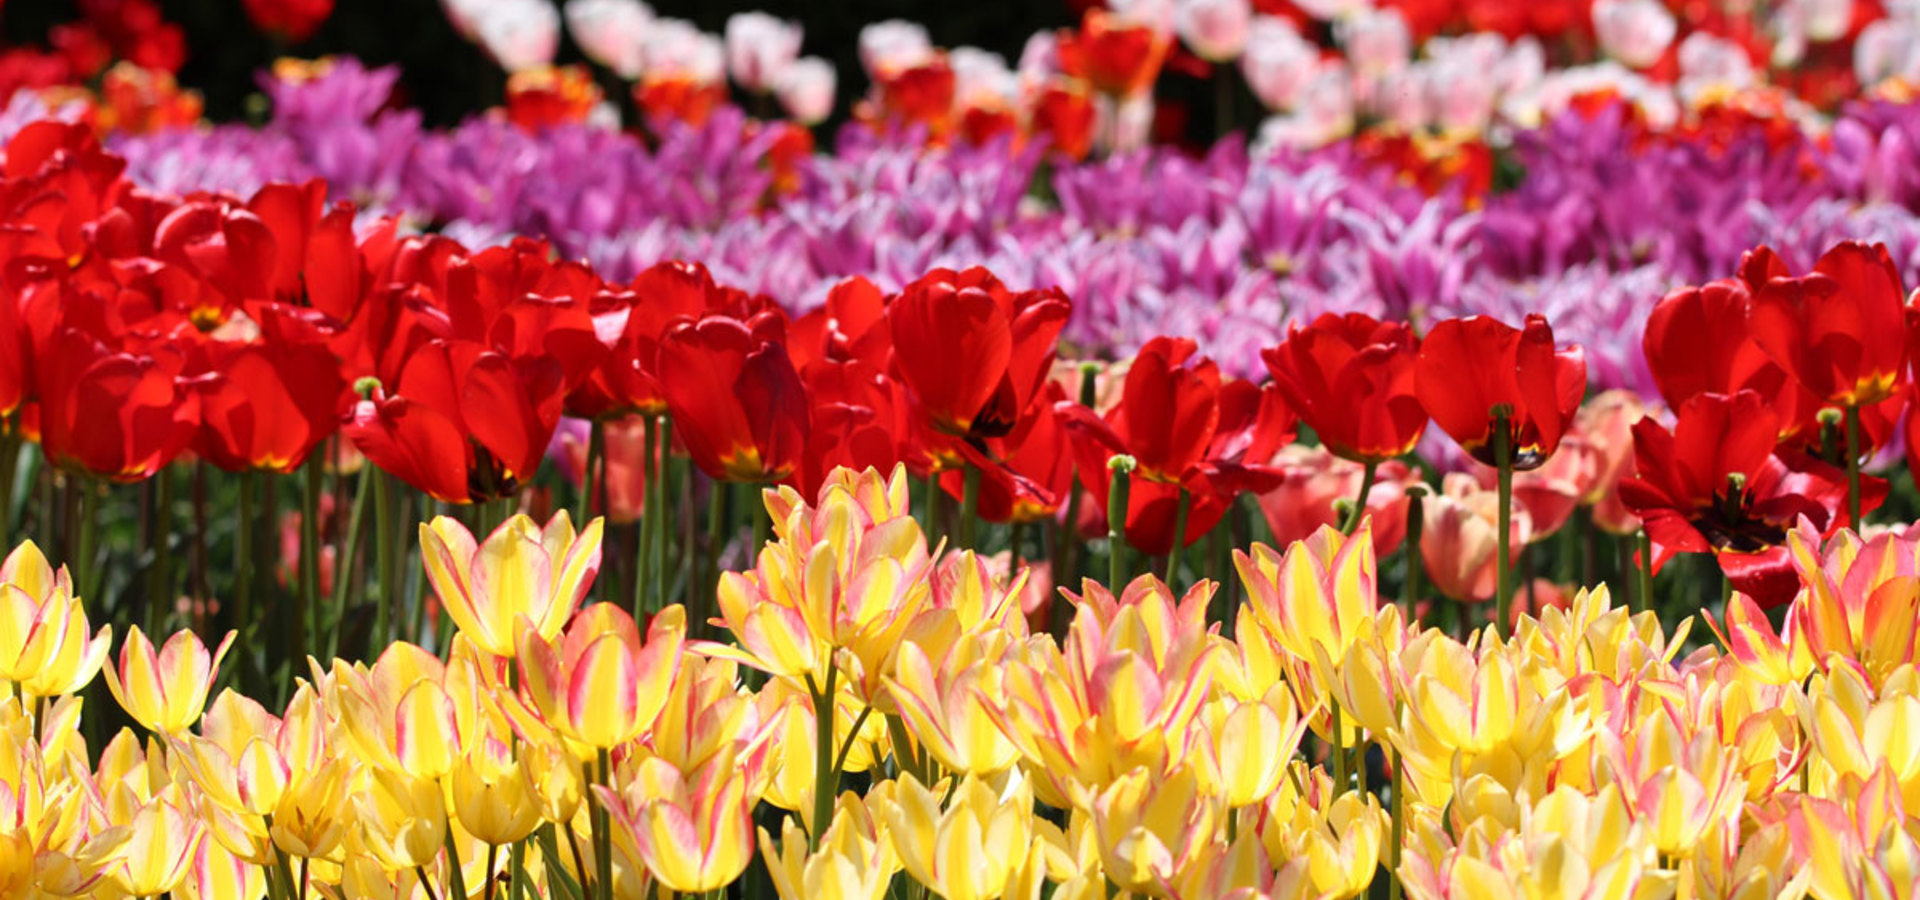 Spomladanska razstava cvetja in tulipanov